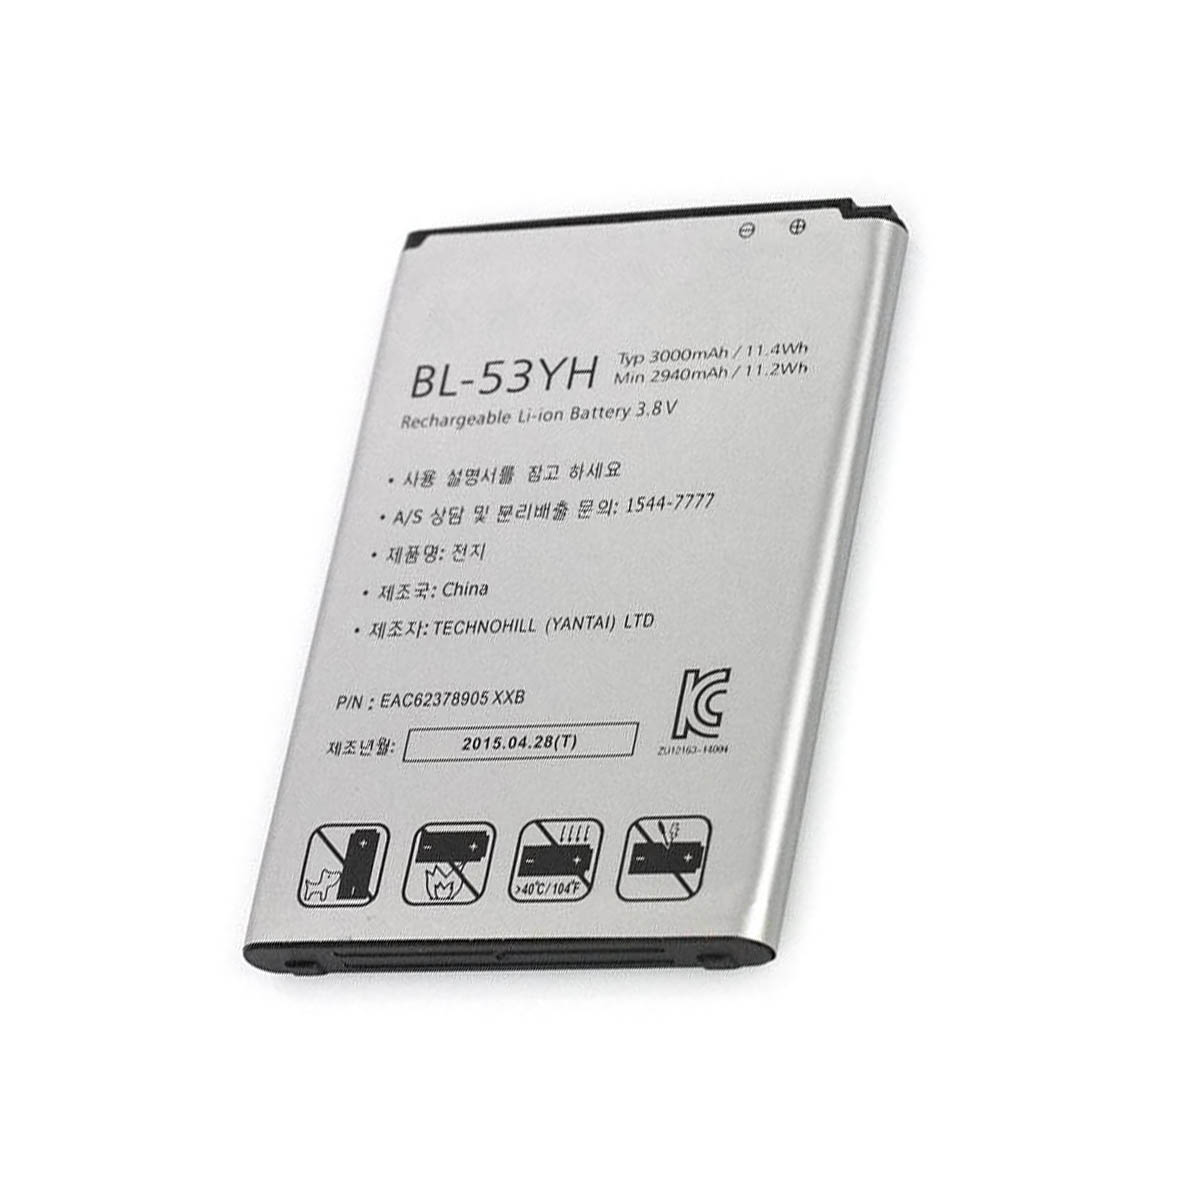 АКБ (Аккумулятор) BL-53YH для LG D830, D850, D850 LTE, D851, D855, D855 LTE, D855AR, D855K, D855P, F400, G3, LS990, LS990 LTE, VS985.